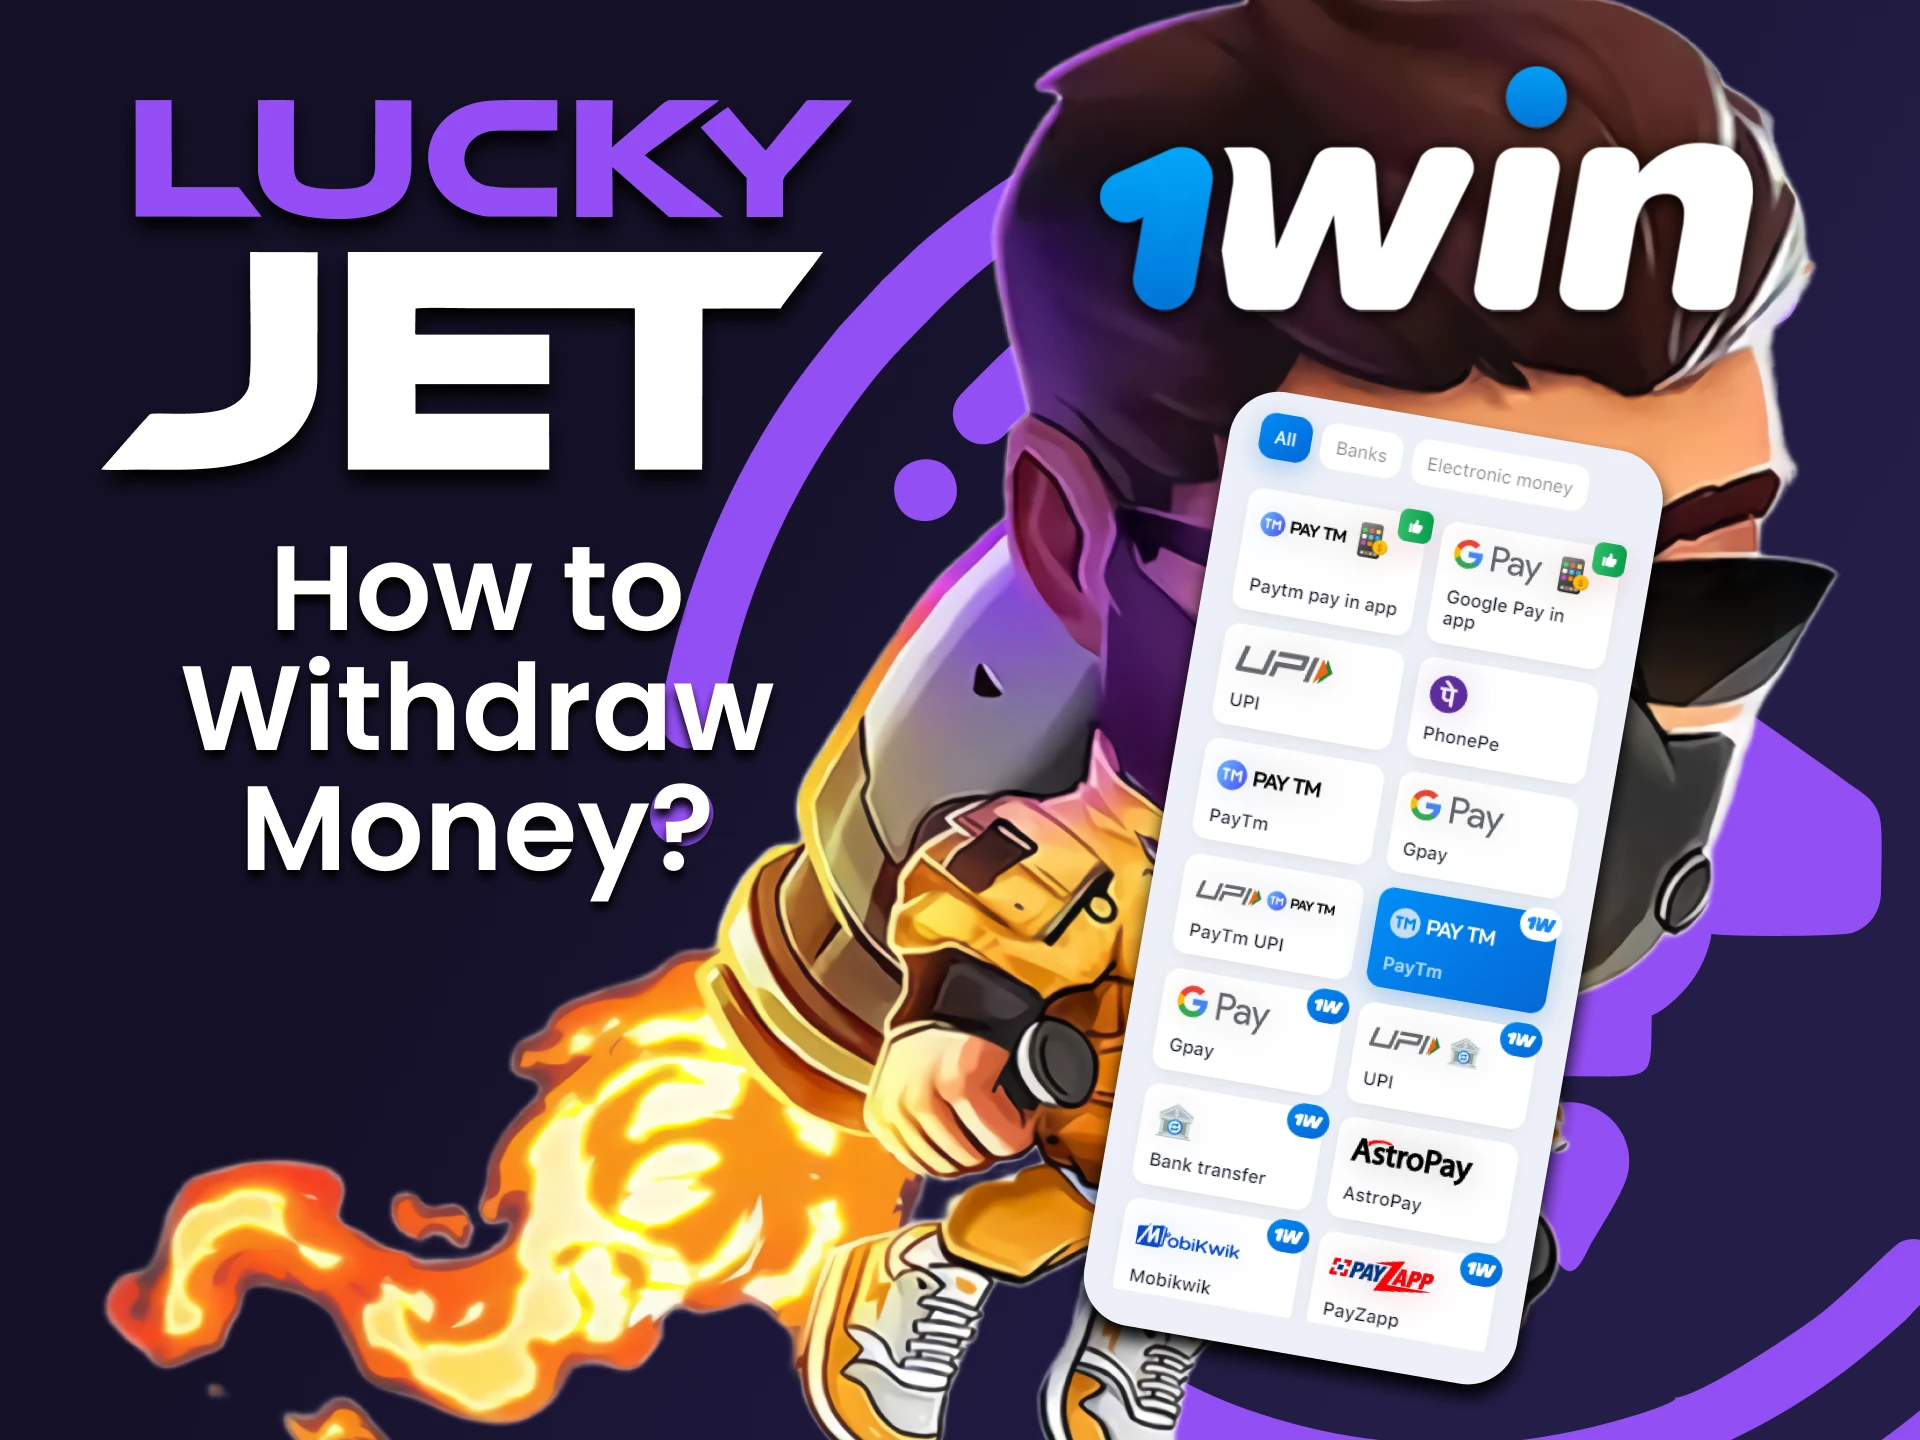 Descubra cómo retirar fondos para Lucky Jet en 1win.